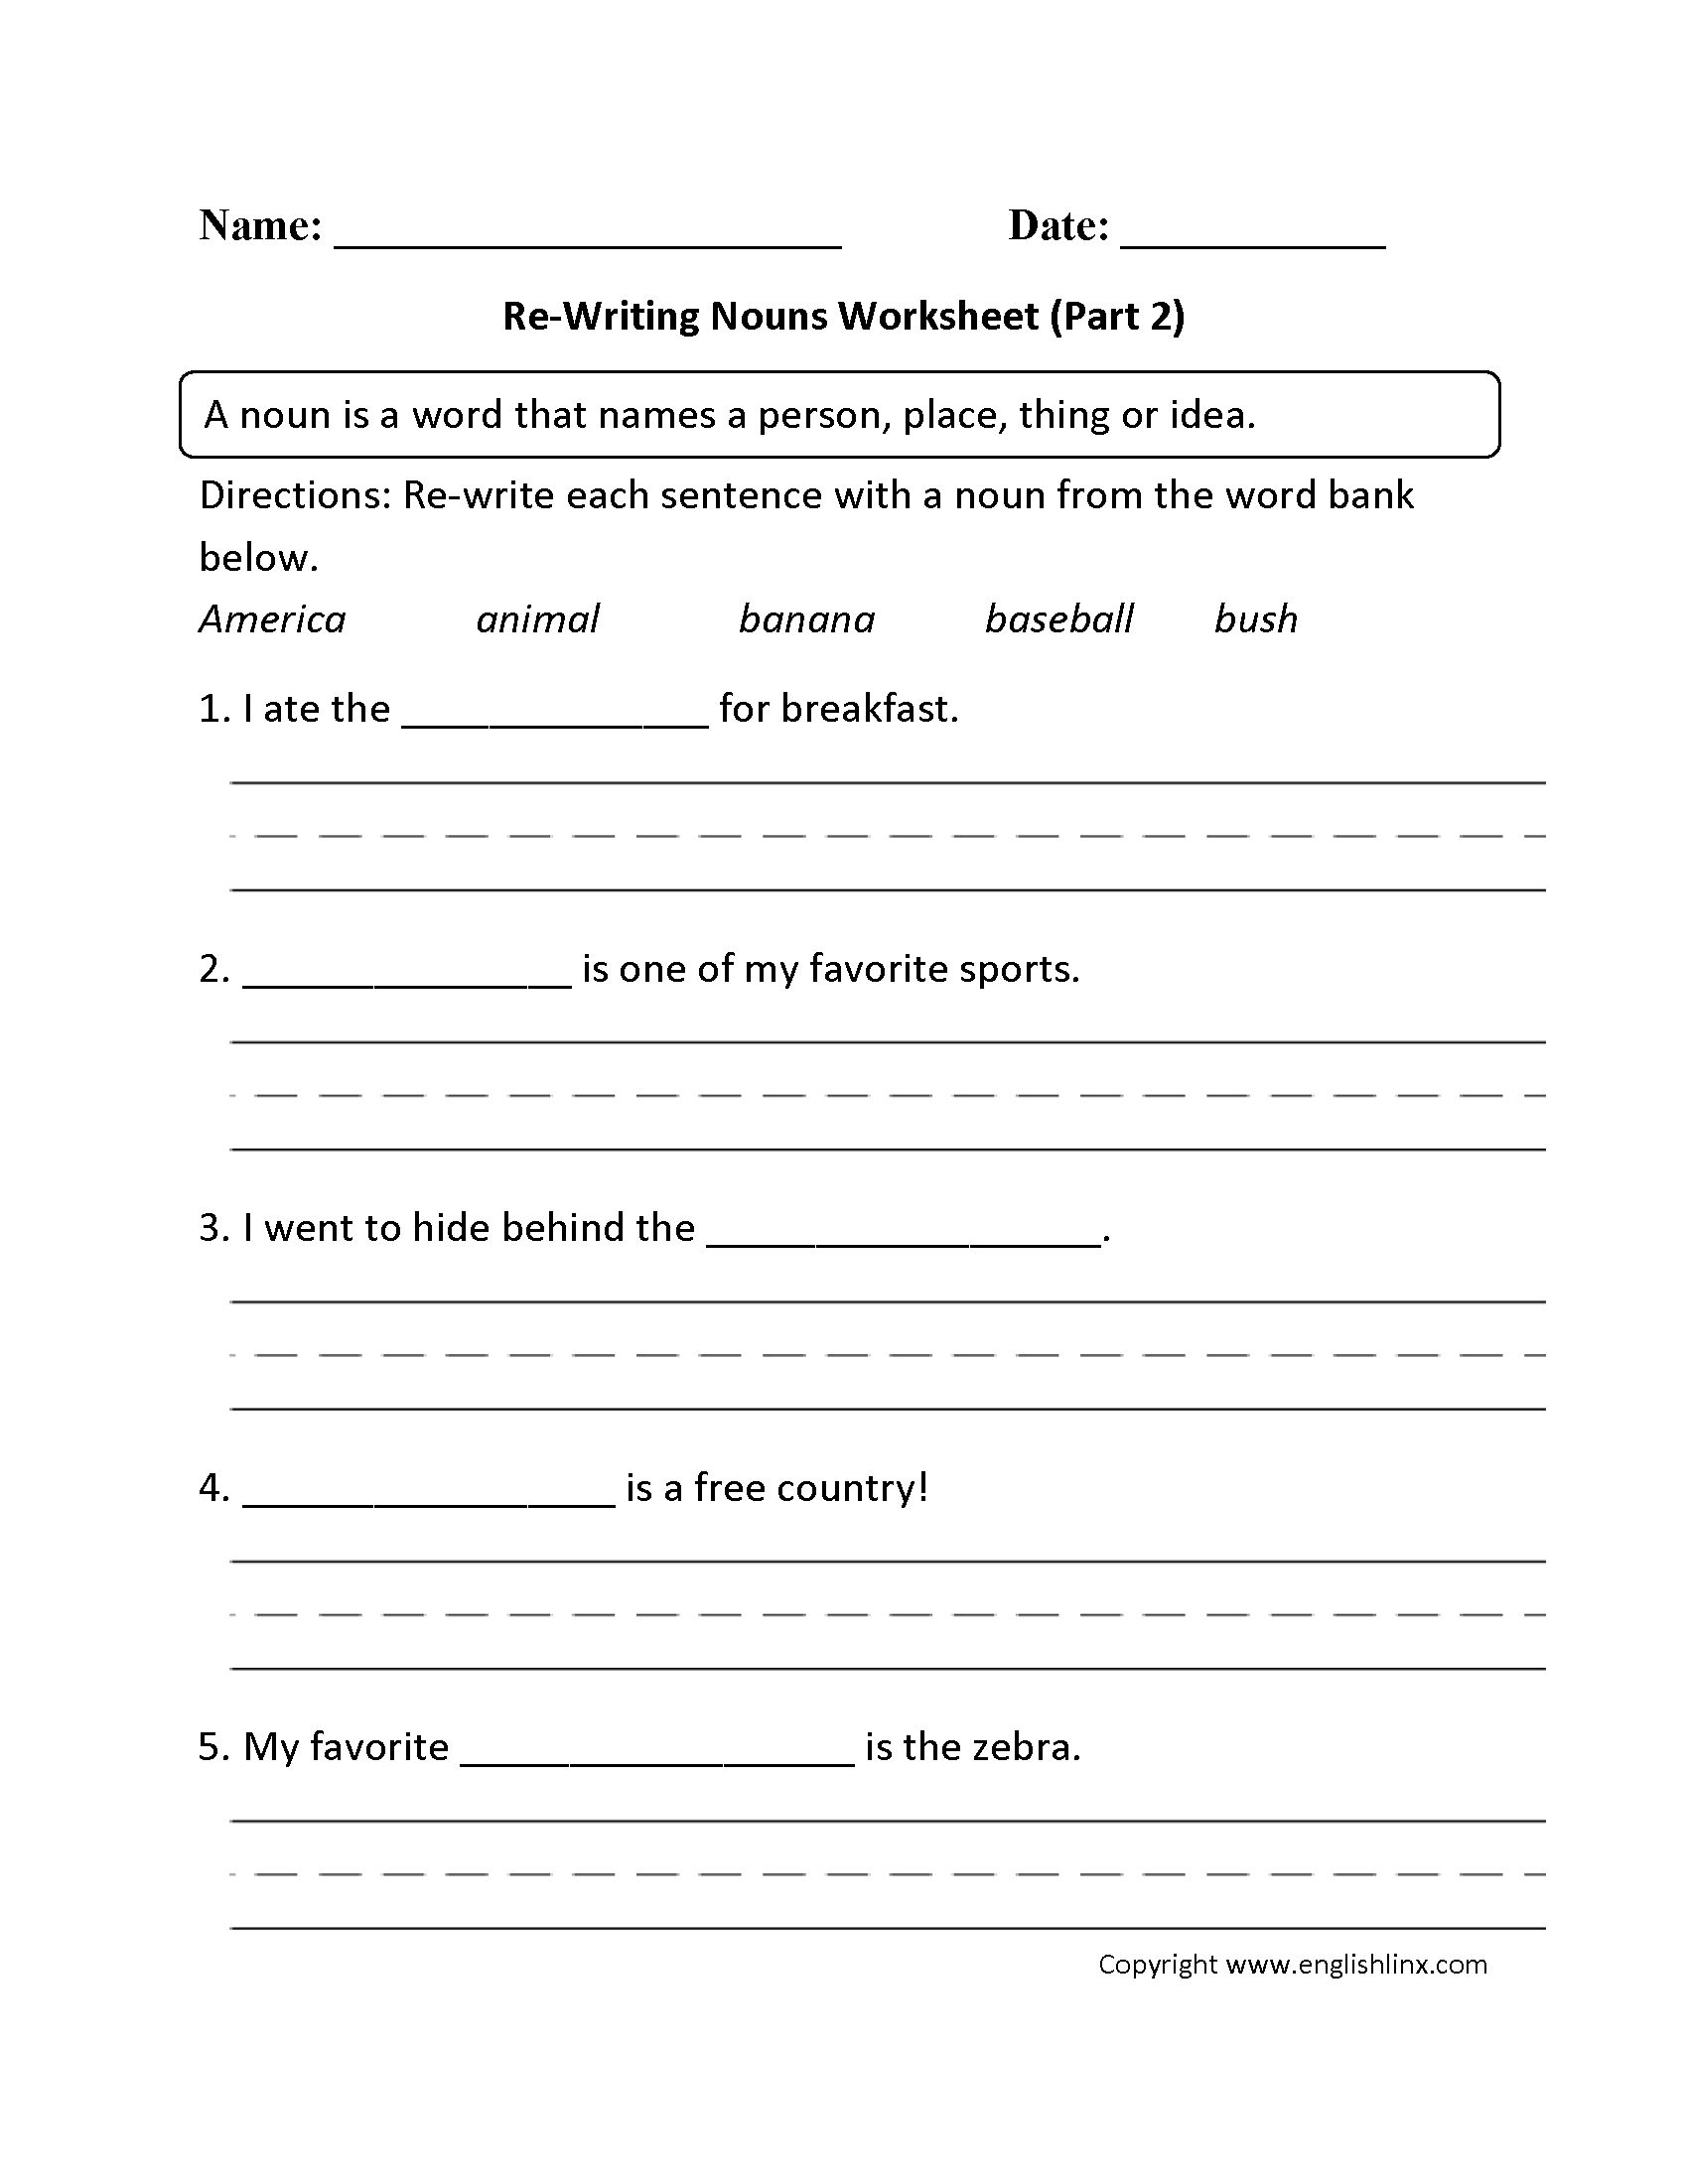 Noun Worksheets For Grade 1 Db excel